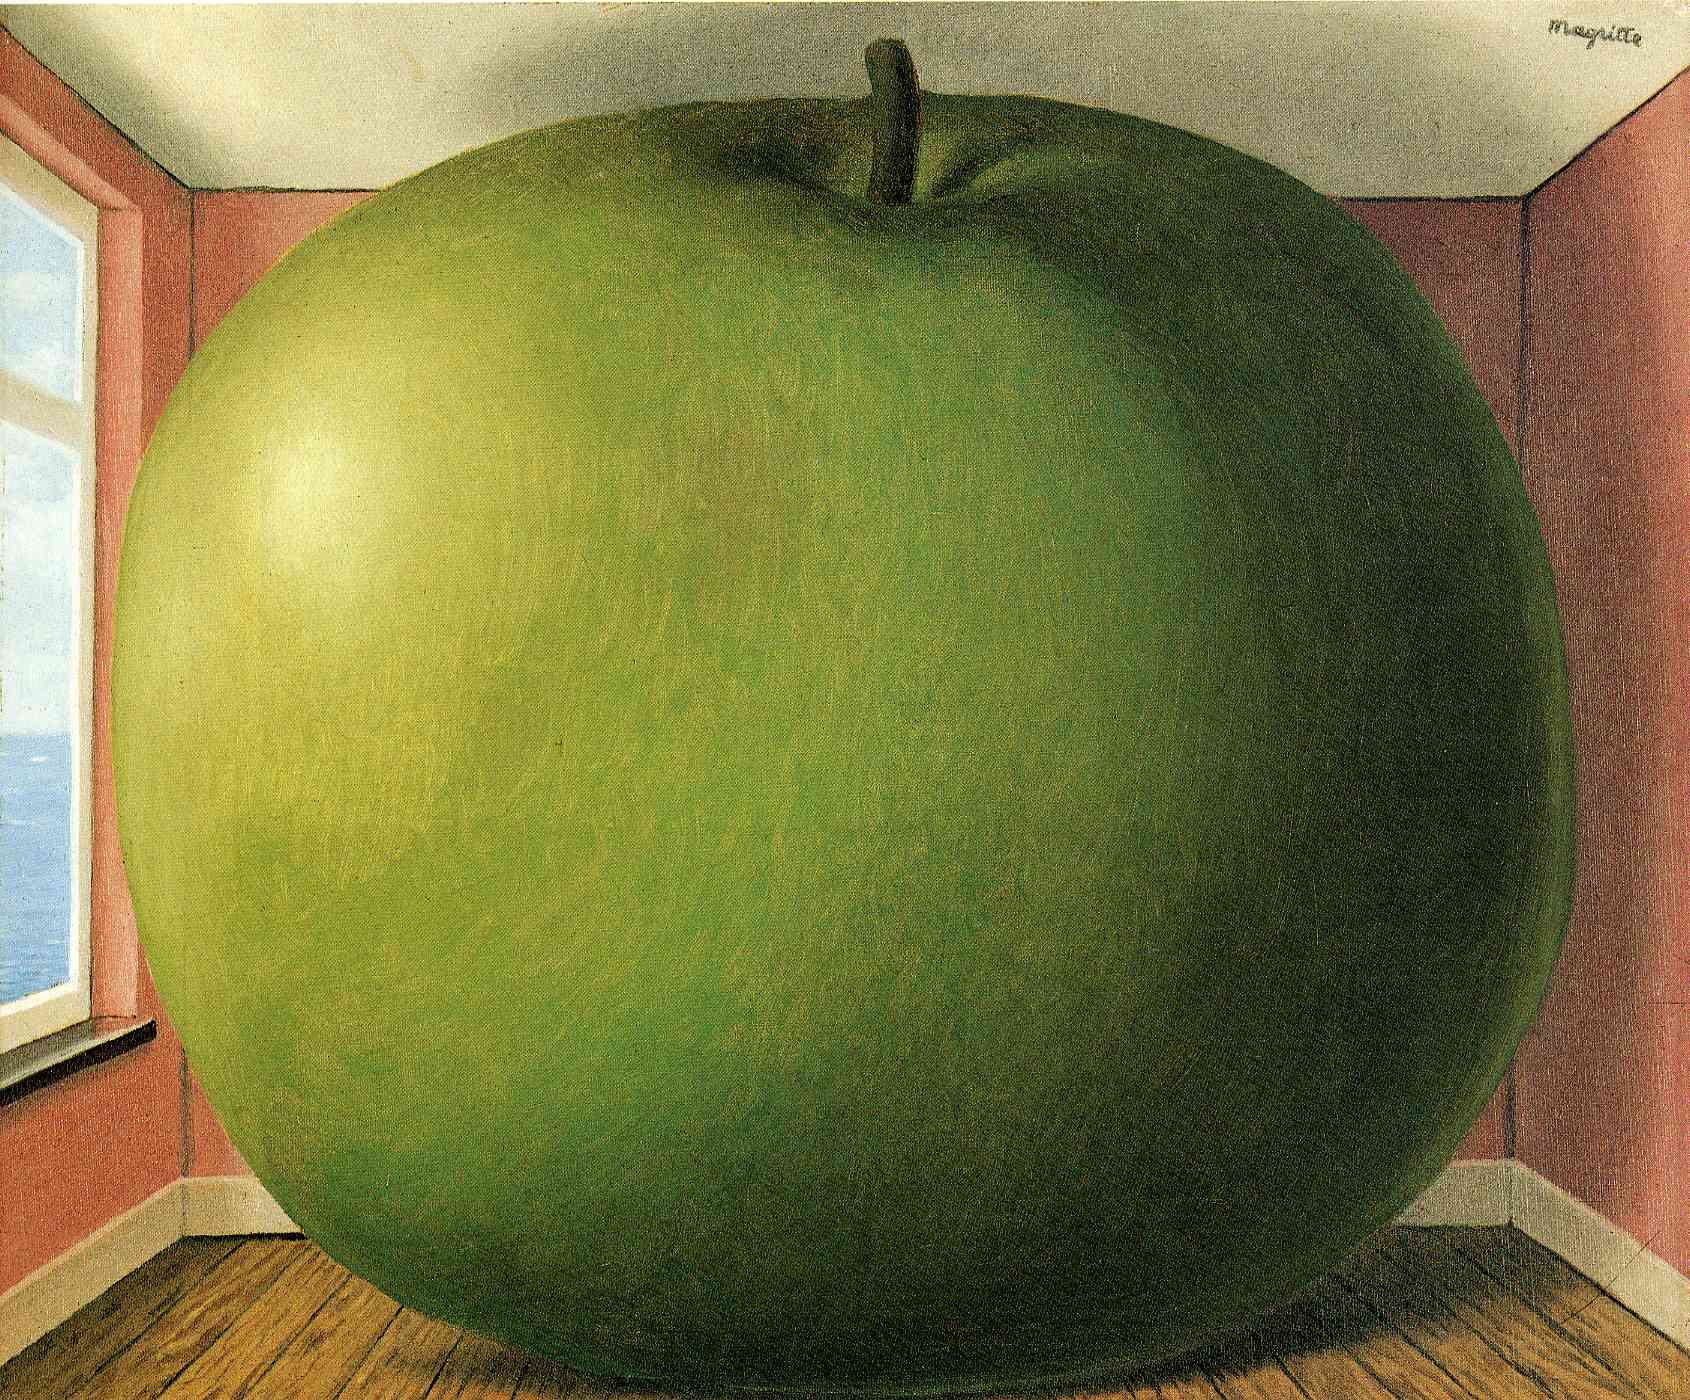 Posluchárna by René Magritte - 1952 - 55 cm x 45 cm 